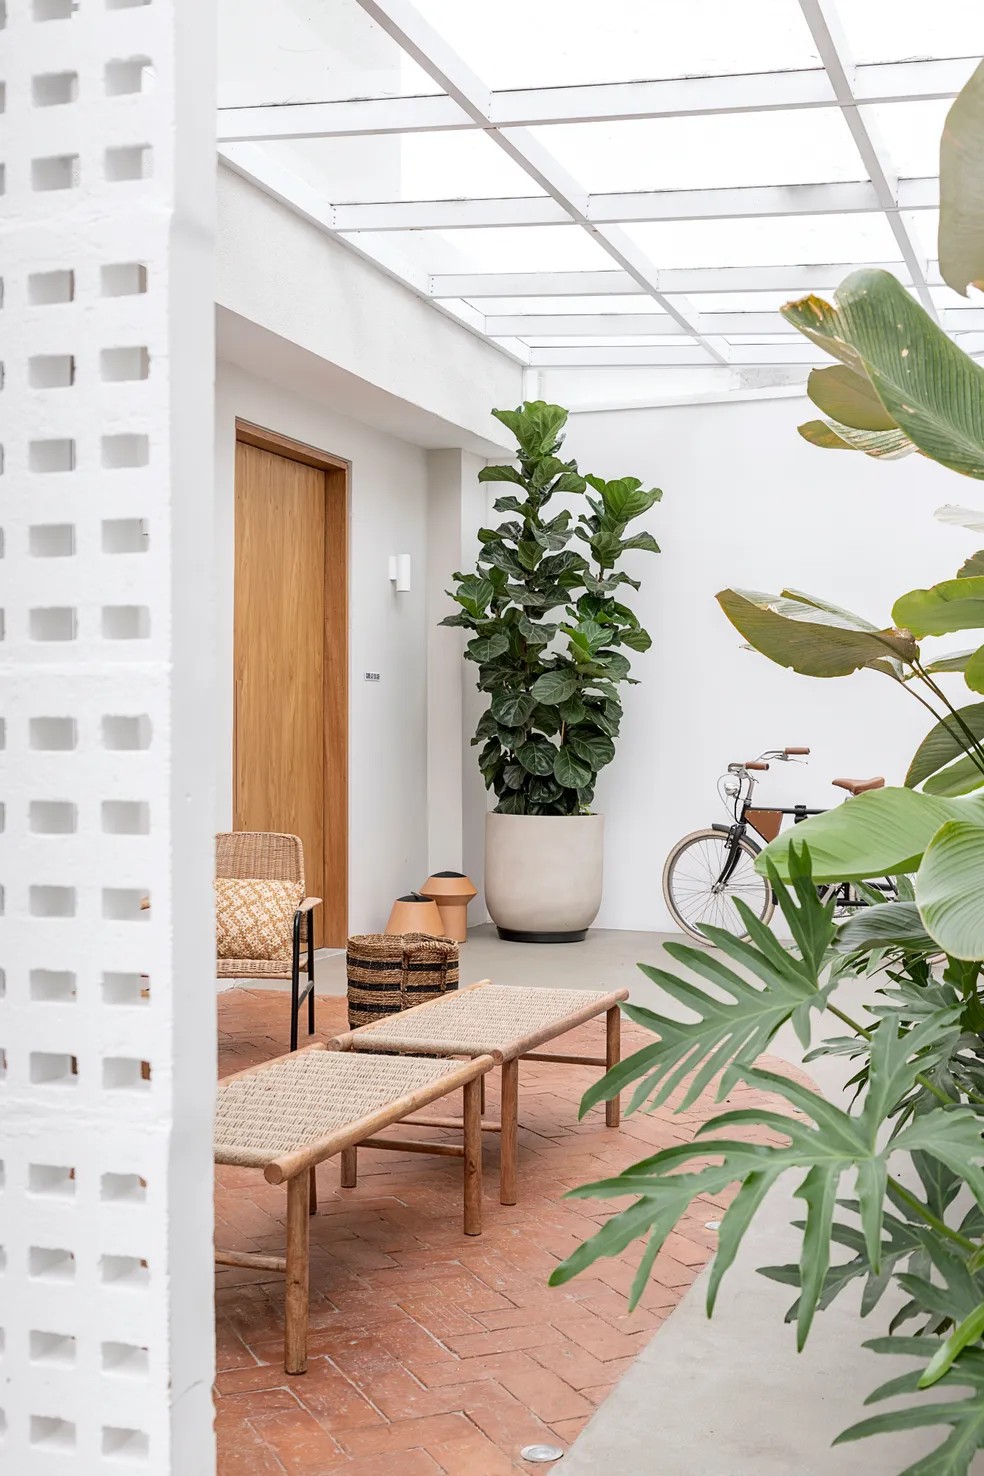  Jardim com plantas, piso de tijolos e de cimento queimado e banco para relaxamento em projeto do estúdio Voa Arquitetura  — Foto: Rafael Renzo/Divulgação